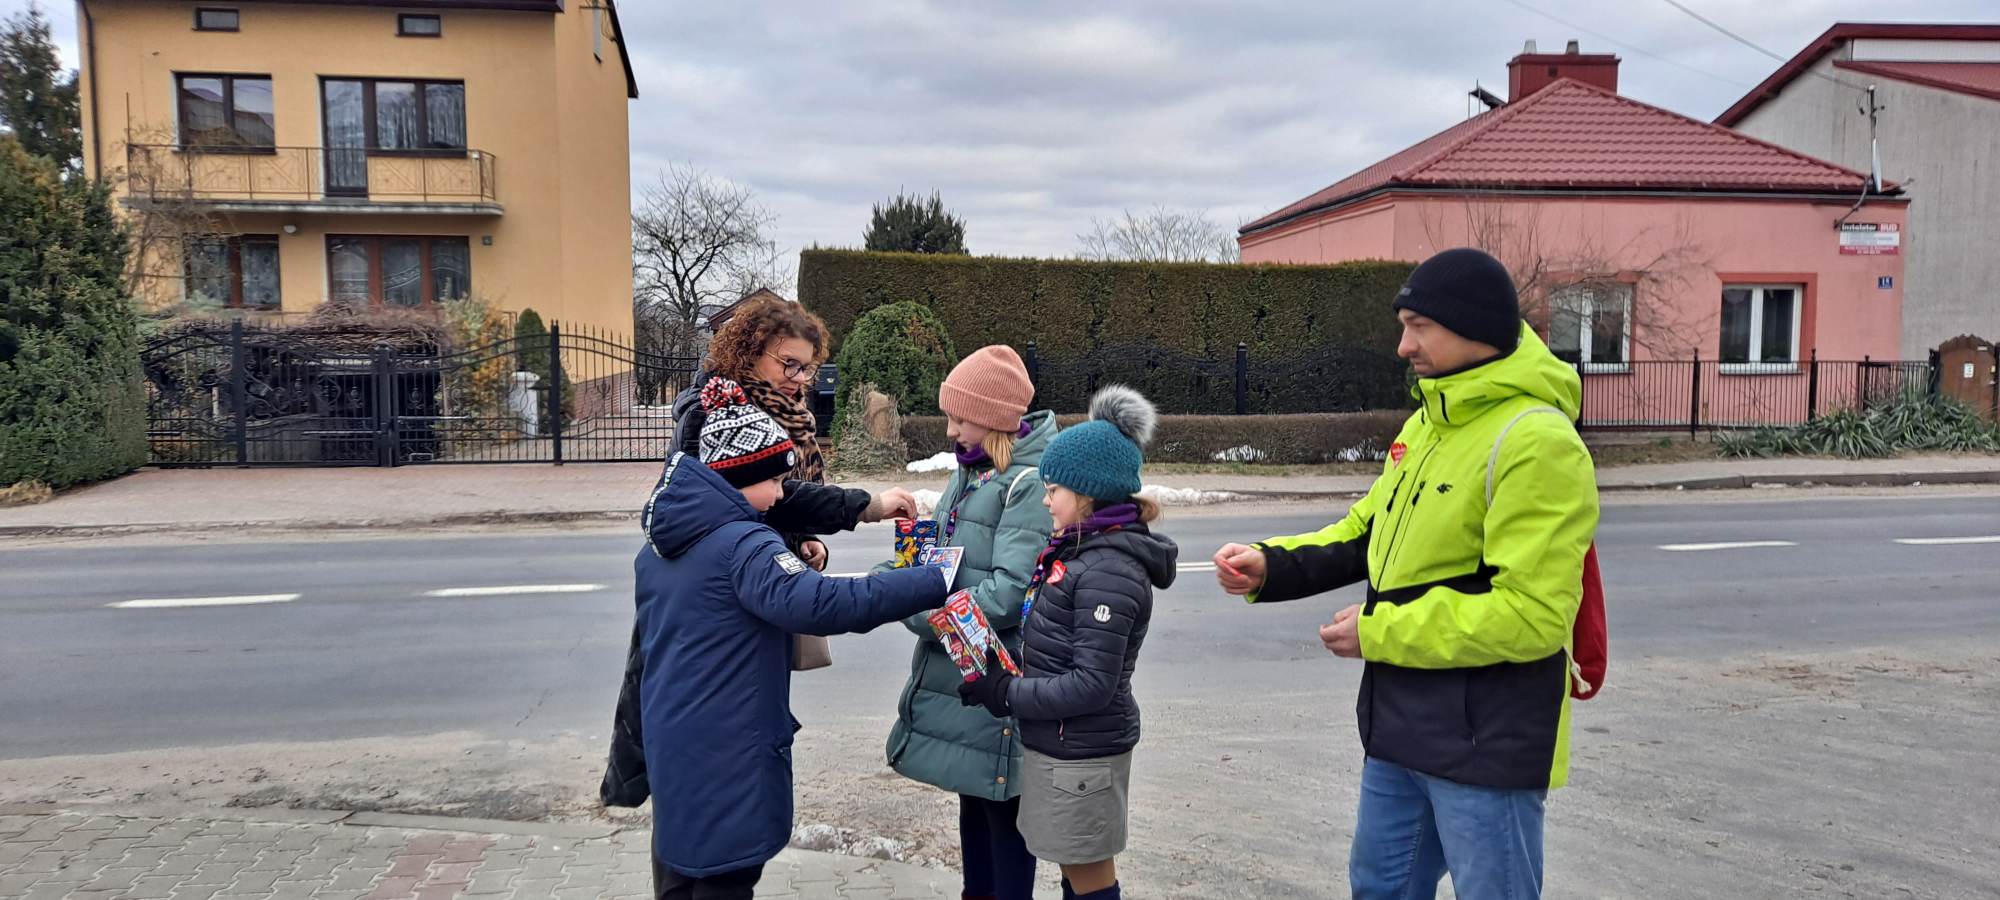 Harcerki - wolontariuszki 31.finału WOŚP wraz z opiekunem kwestują na ulicy miasteczka.Rodzic i dziecko wrzucają pieniądze do puszki.